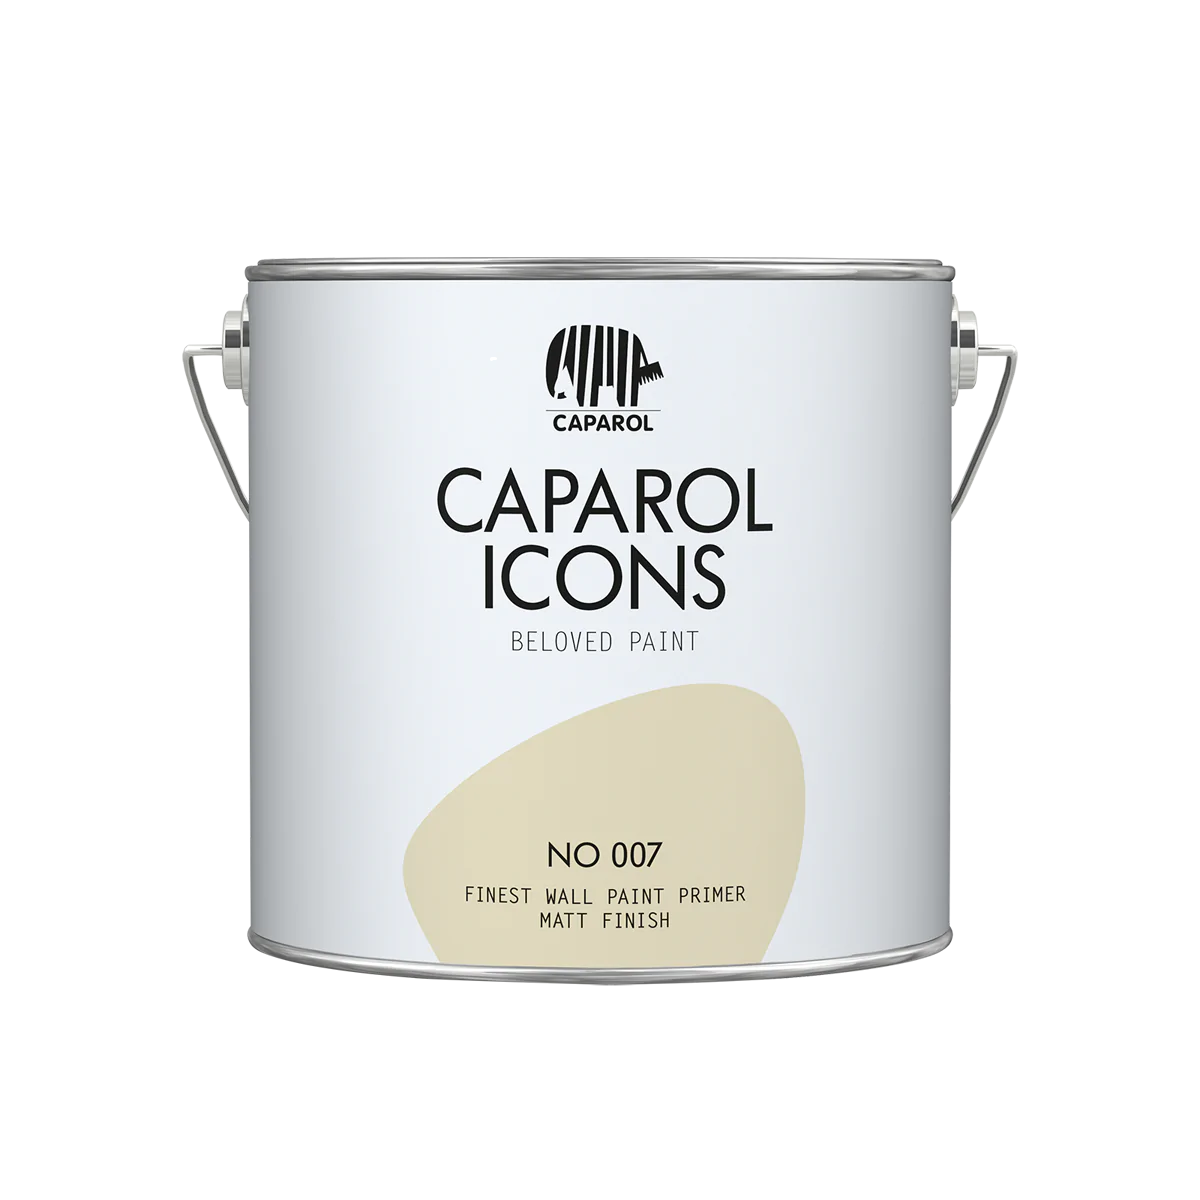 Caparol ICONS FINEST WALL PRIMER NO 007, 2,5l